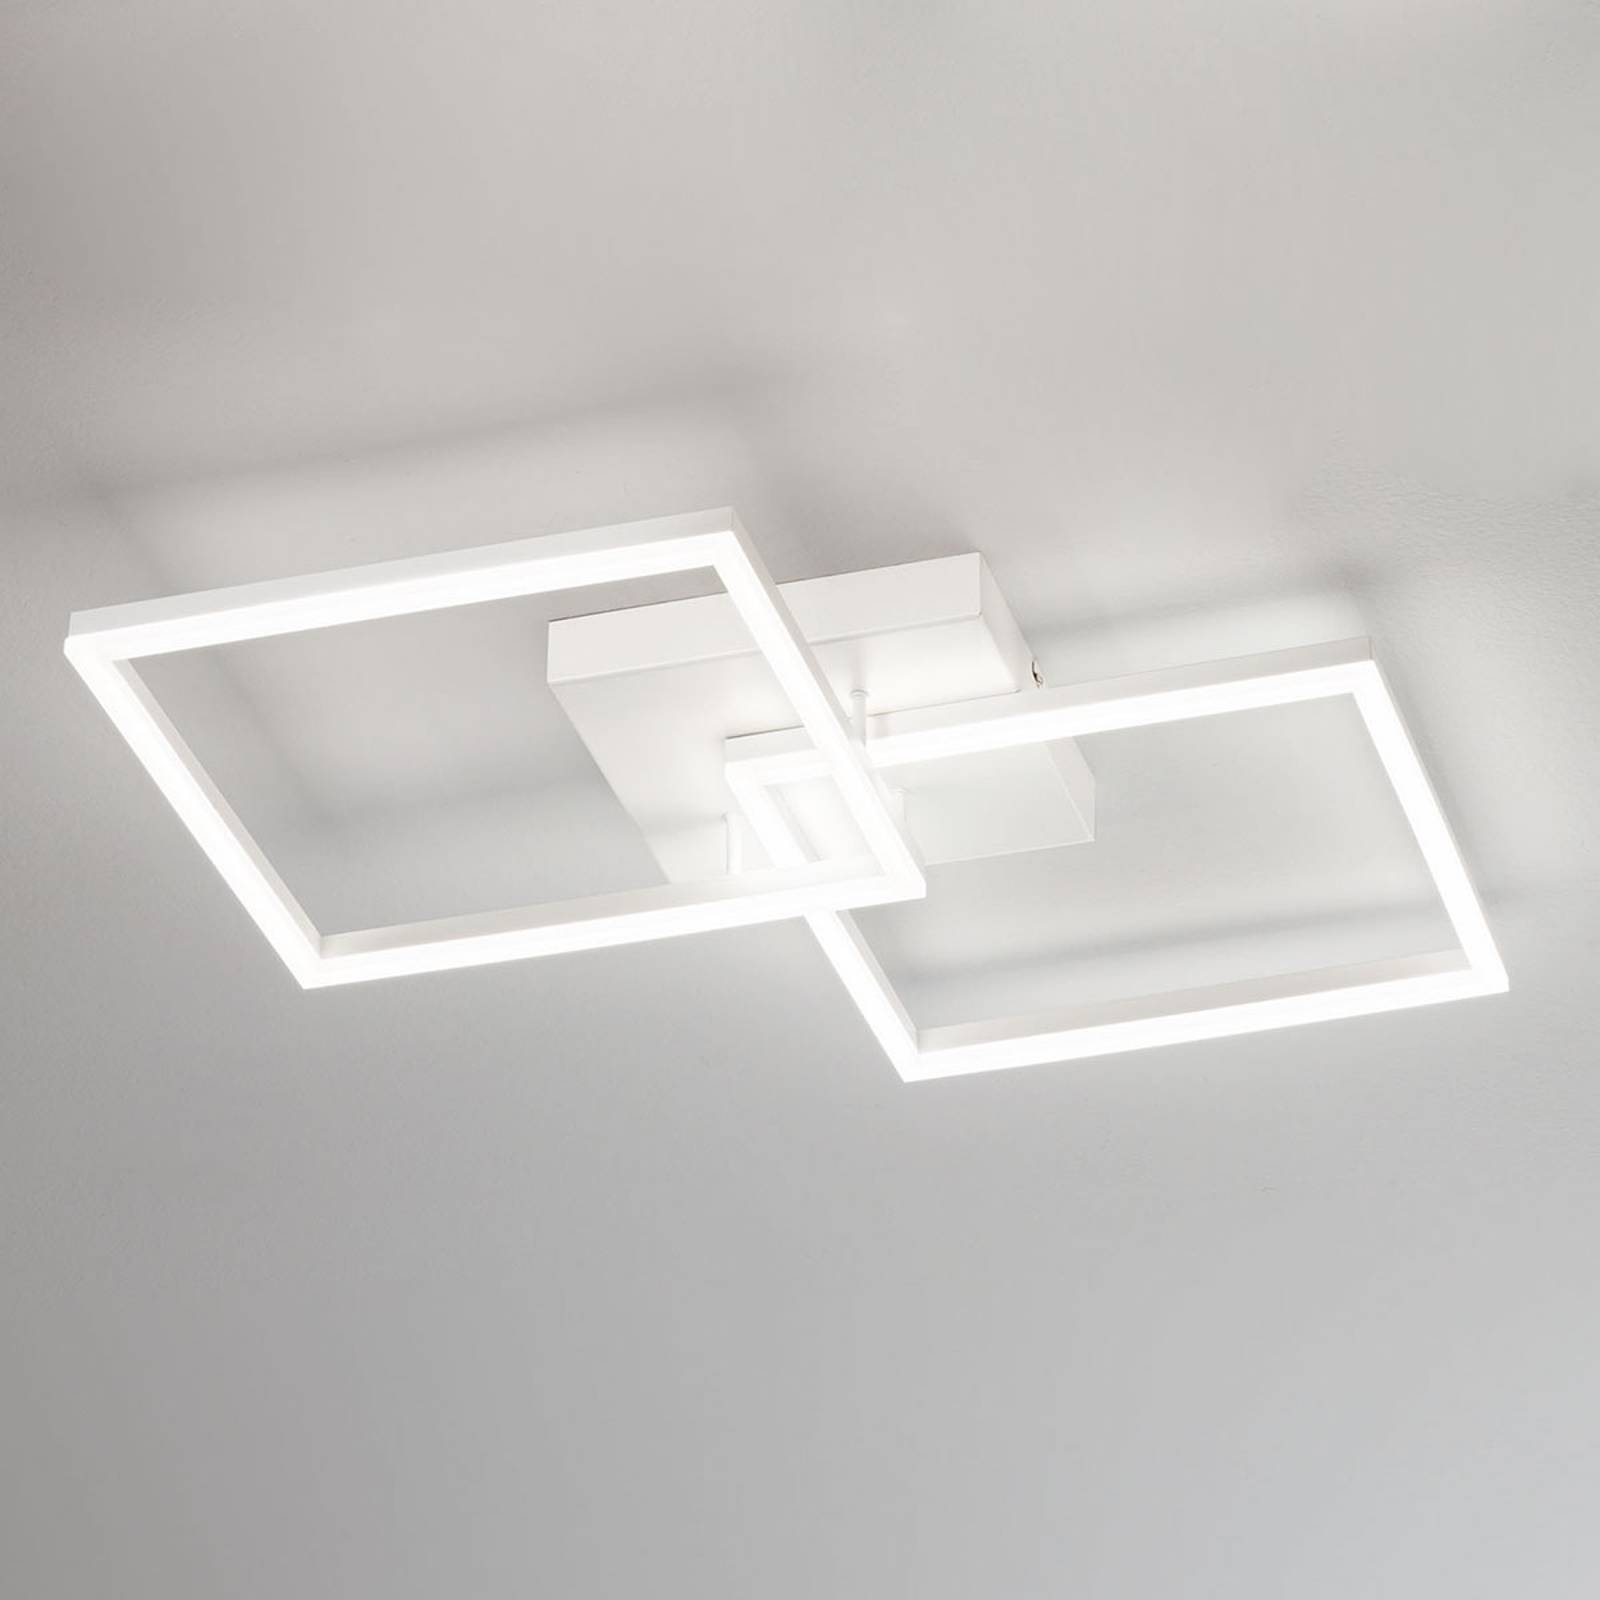 Moderni LED-kattolamppu Bard valkoisena